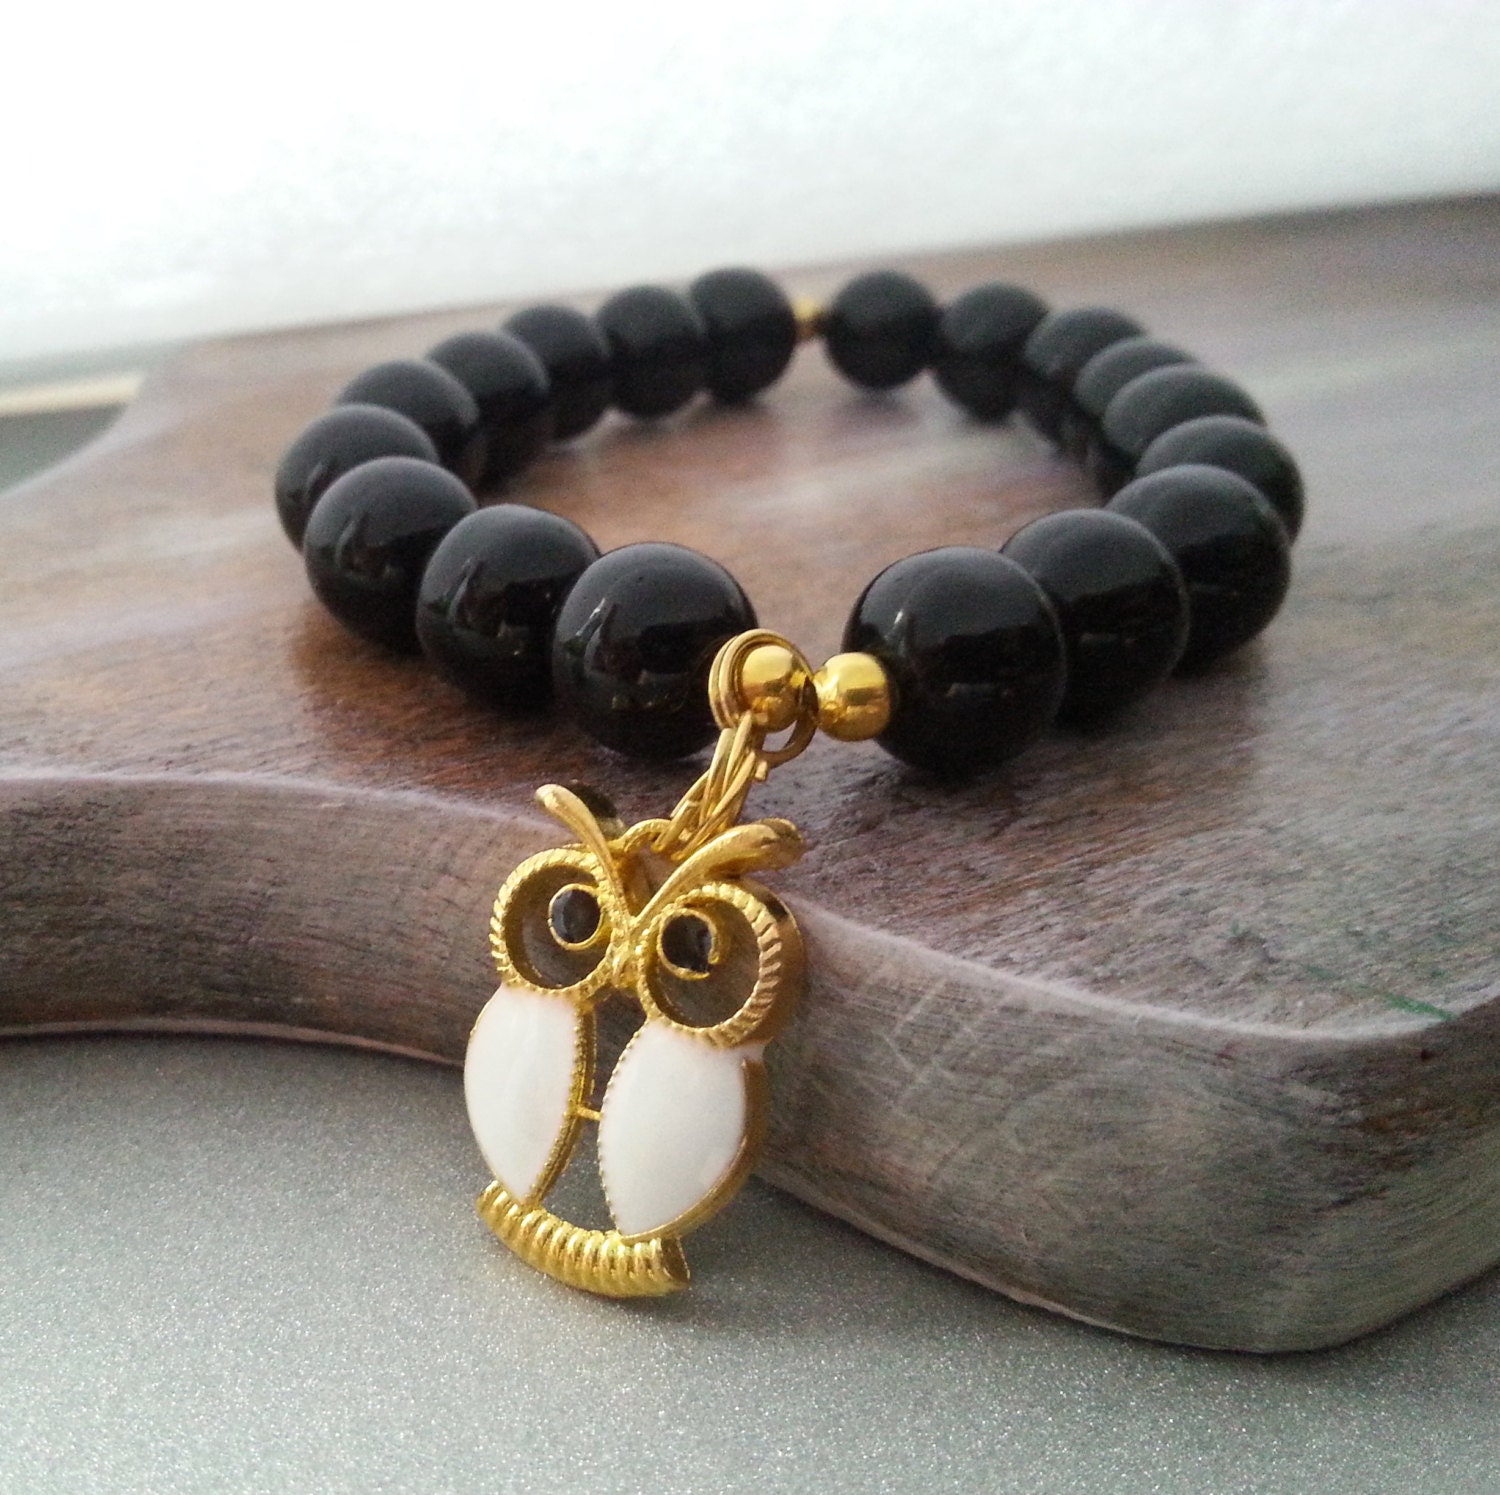 Black glass owl pendant bracelet christmas gift idea for her - MKedraDecoupage